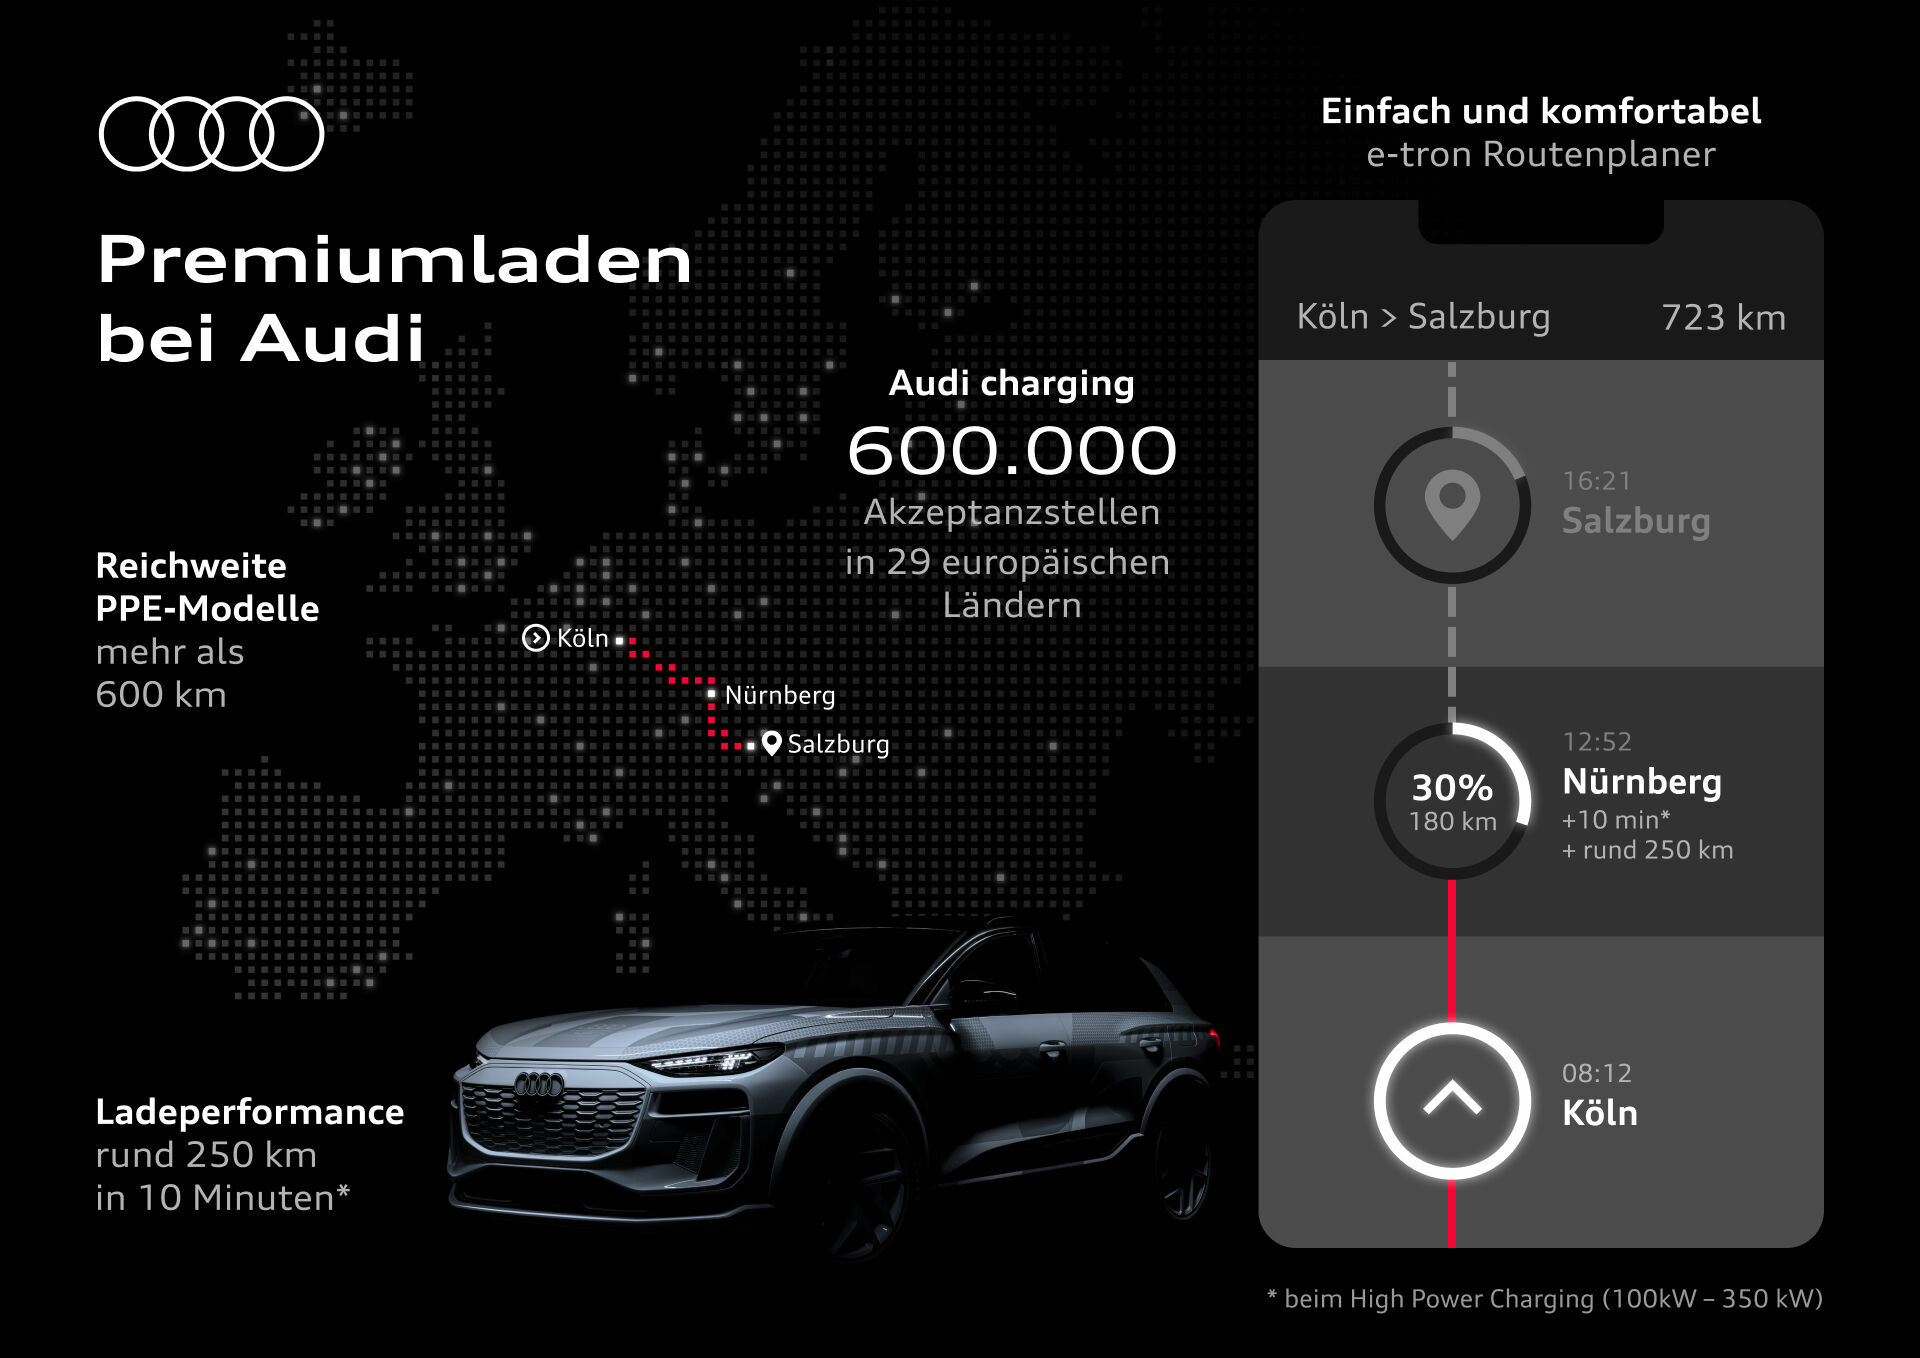 Premiumladen bei Audi